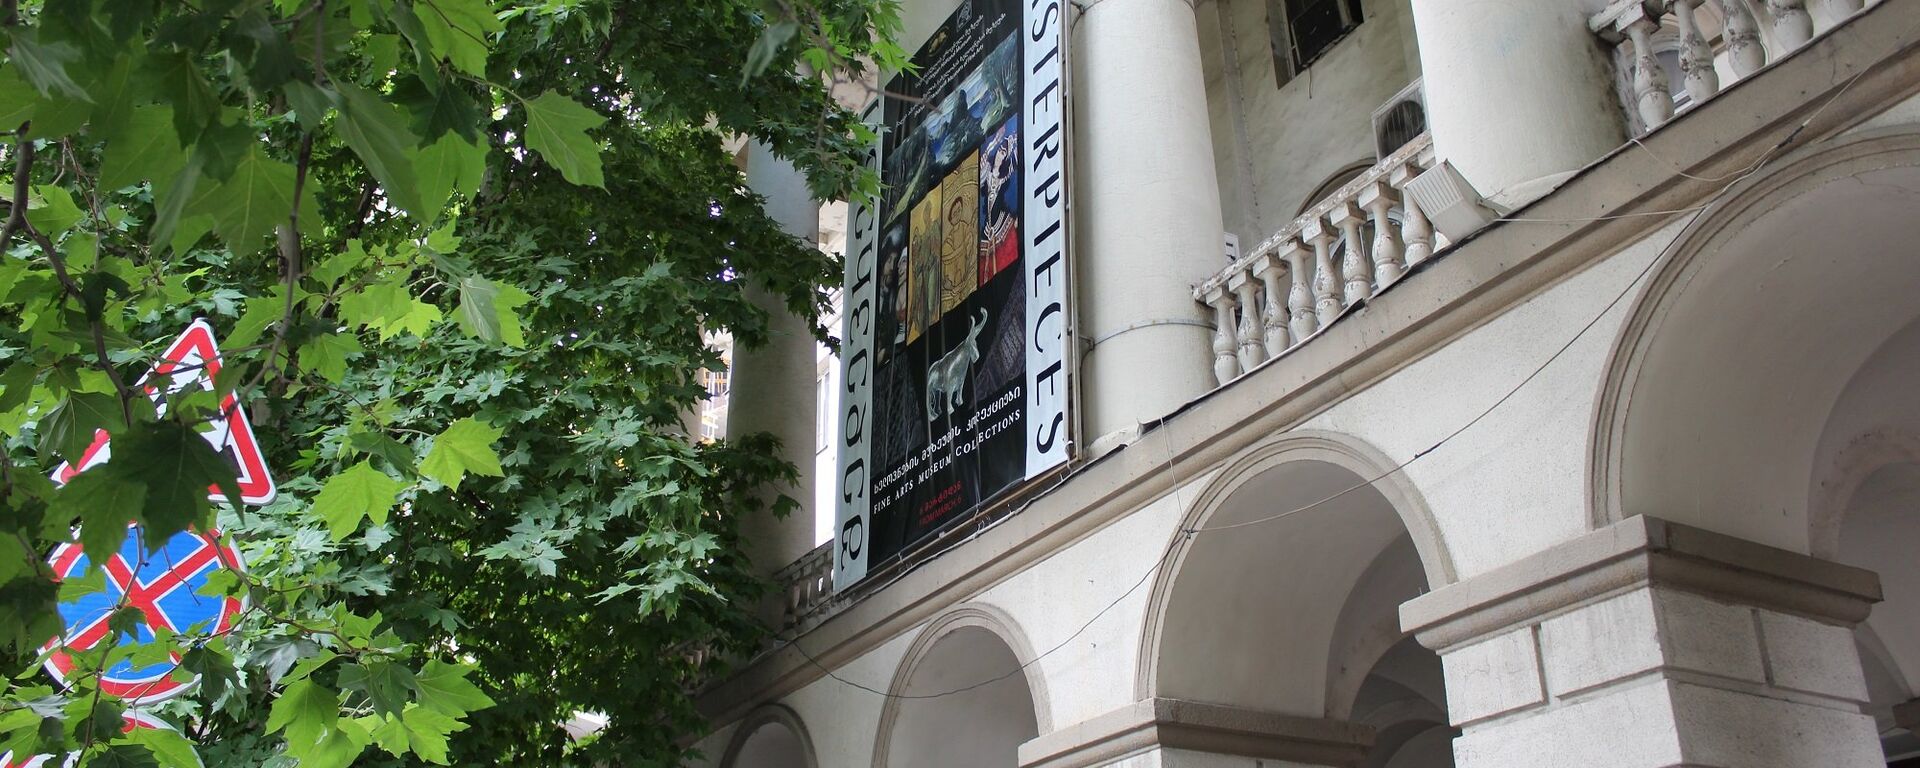 Музей искусств имени Шалвы Амиранашвили - Sputnik Грузия, 1920, 23.07.2021